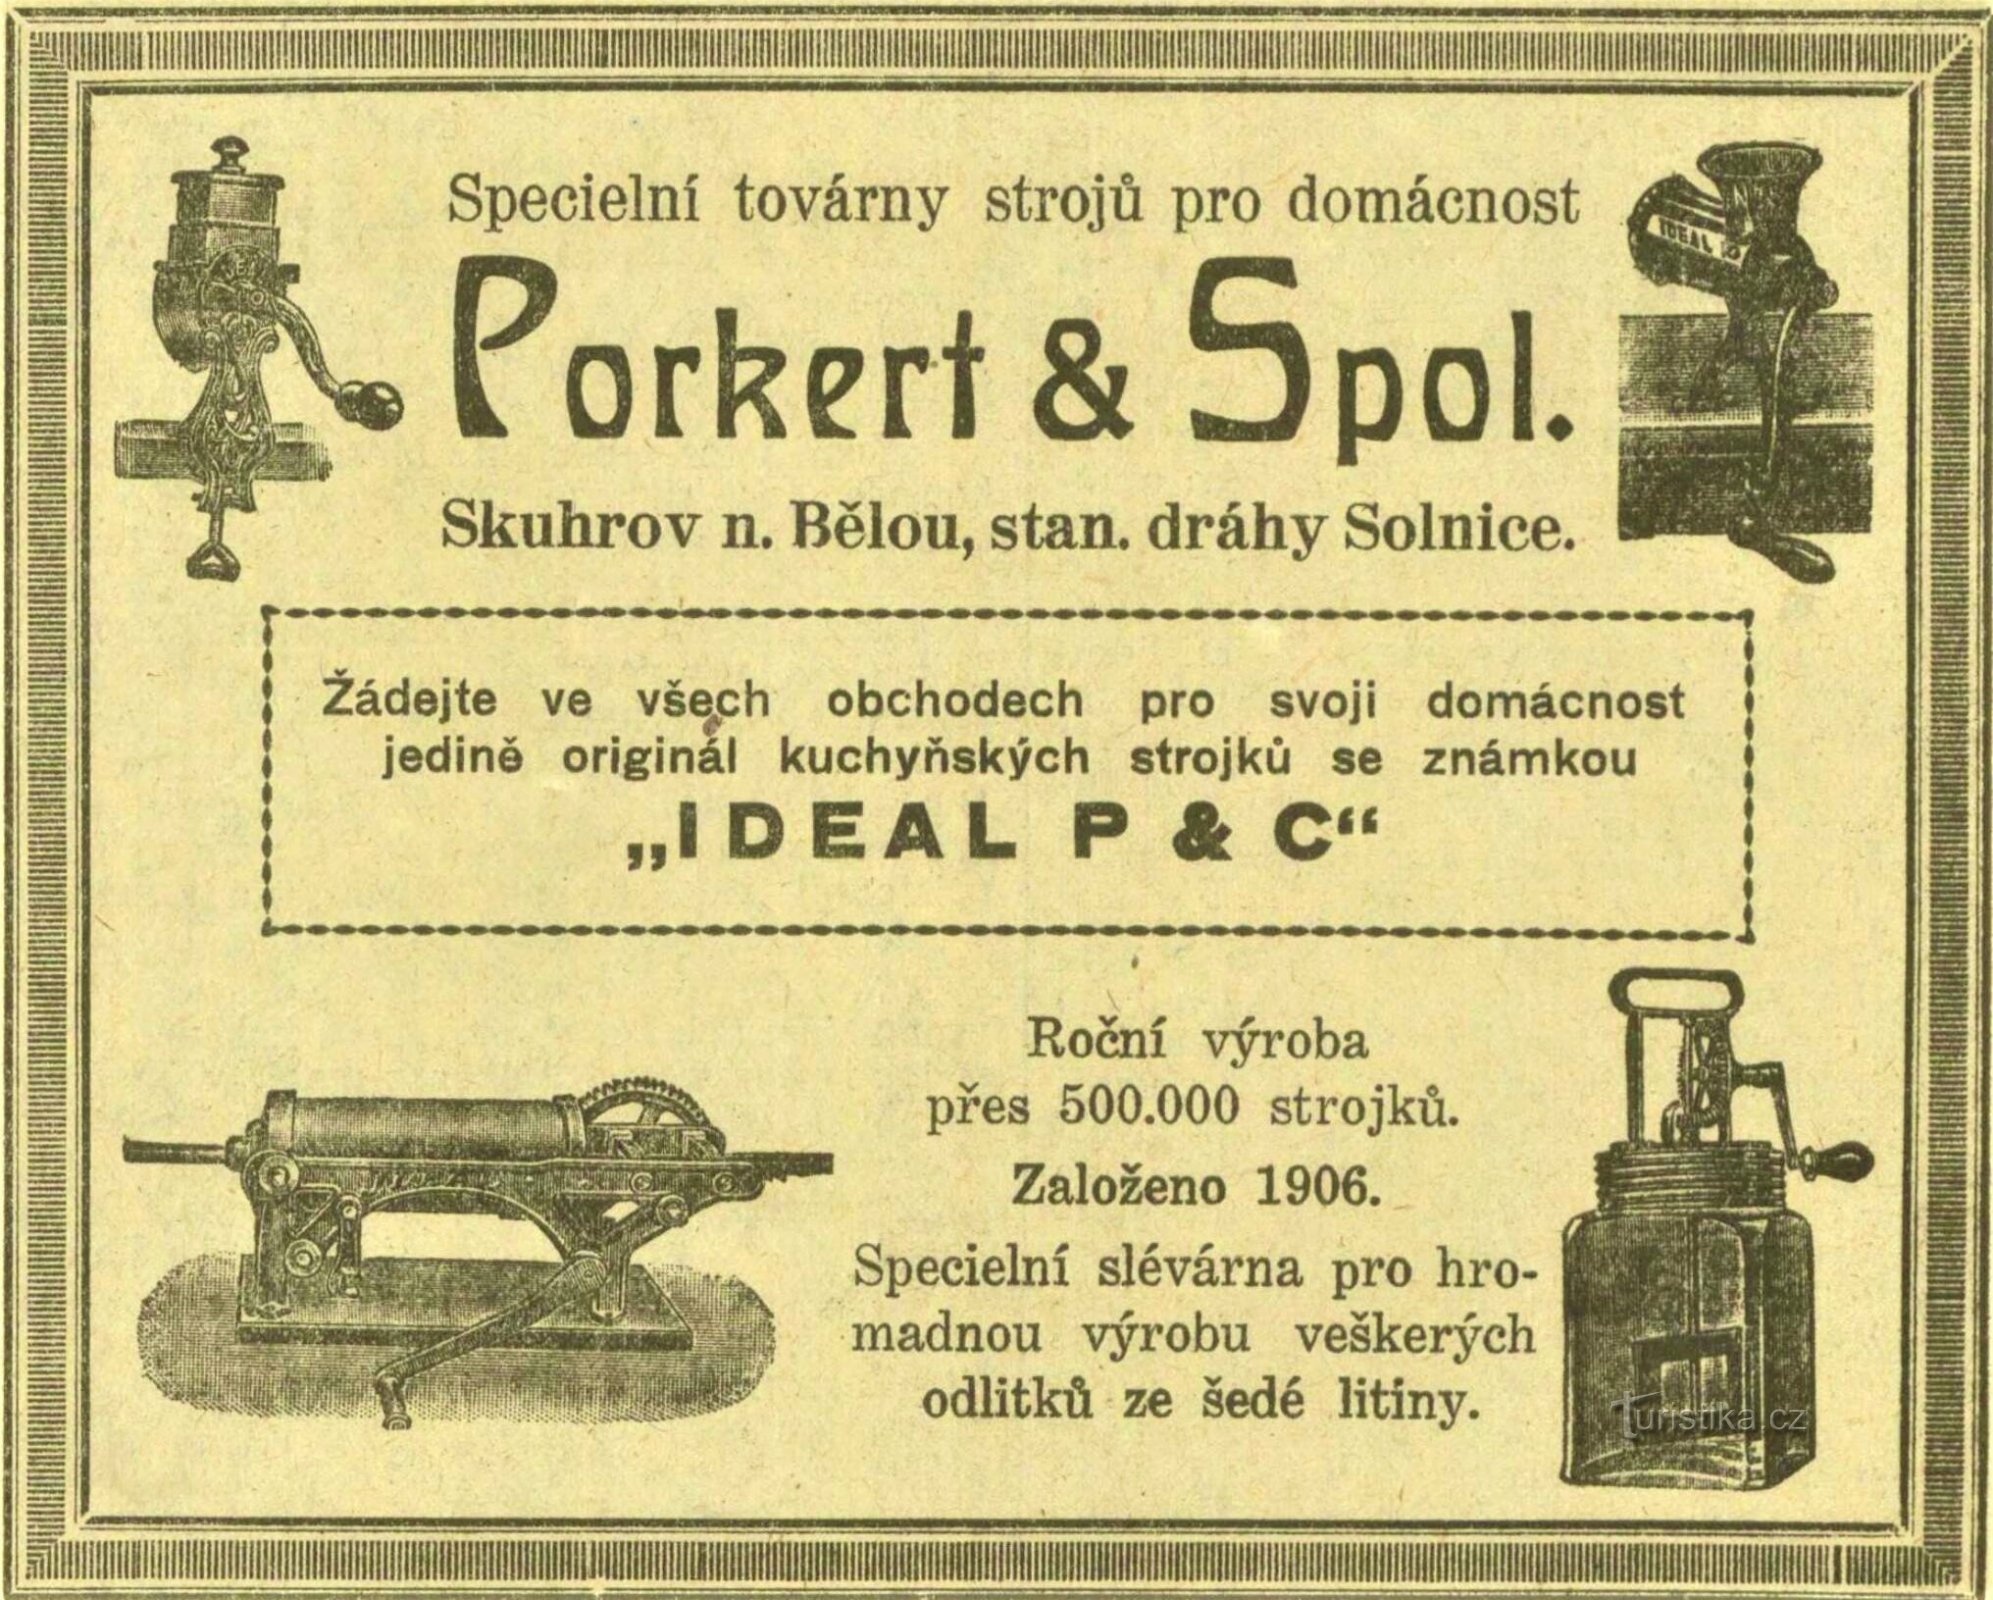 Періодична реклама фабрики Porkert у Скугрові над Бєлоу 1930 року